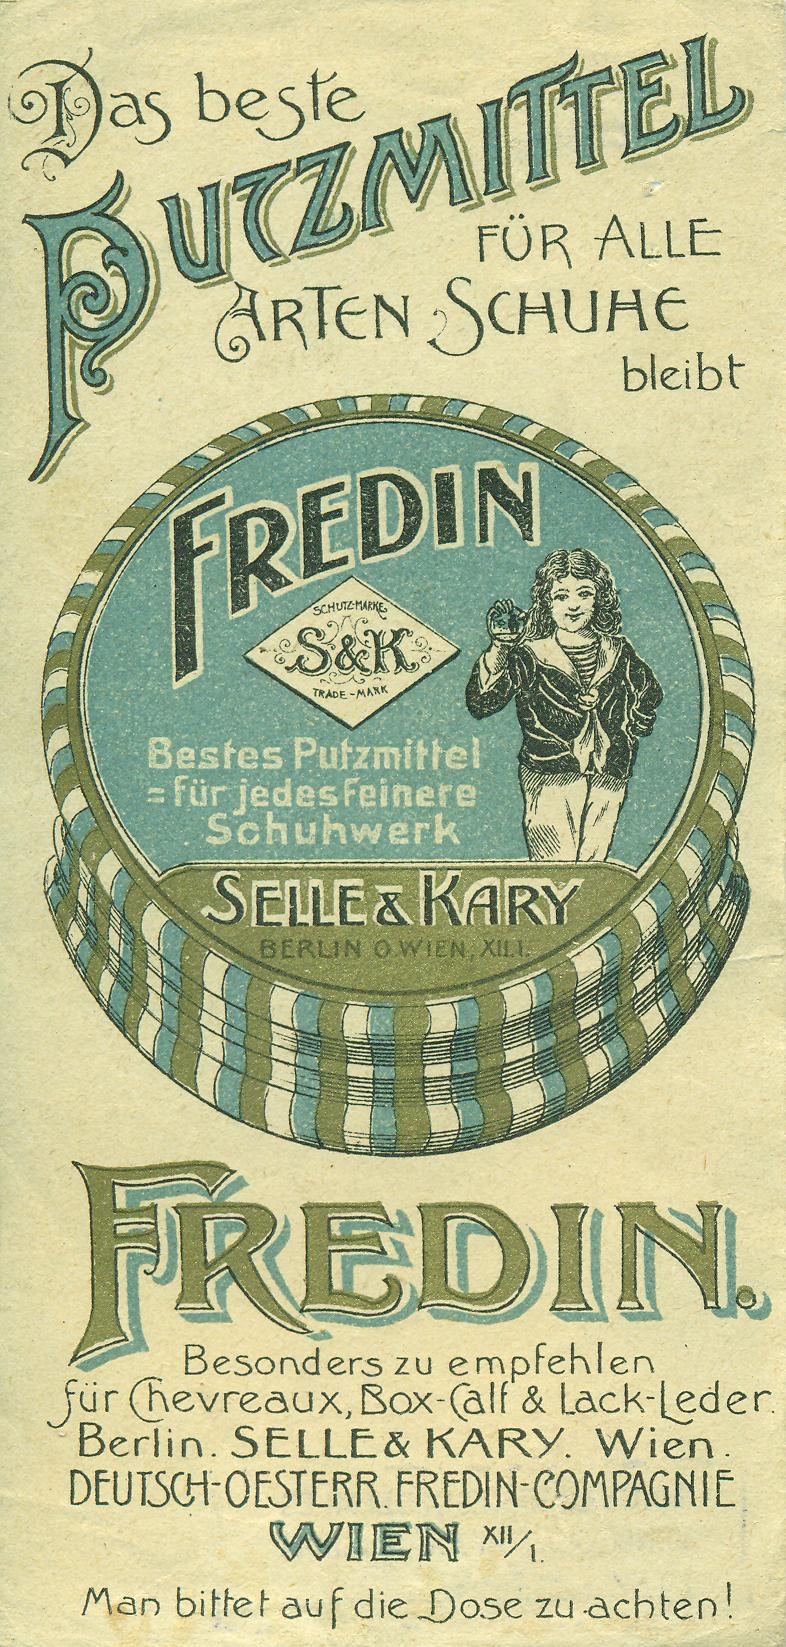 Fredin cipőtisztítószer (Magyar Kereskedelmi és Vendéglátóipari Múzeum CC BY-NC-SA)